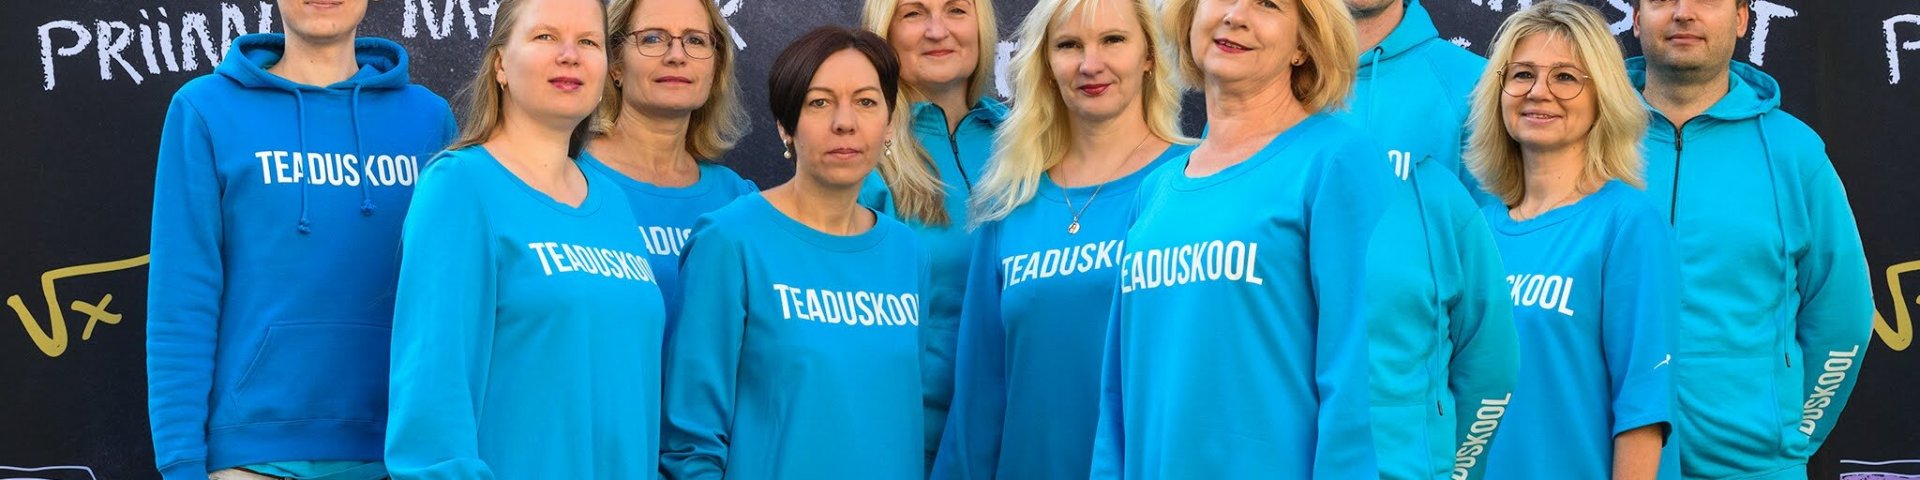 Tartu Ülikooli teaduskooli töötajad 2021. aastal.